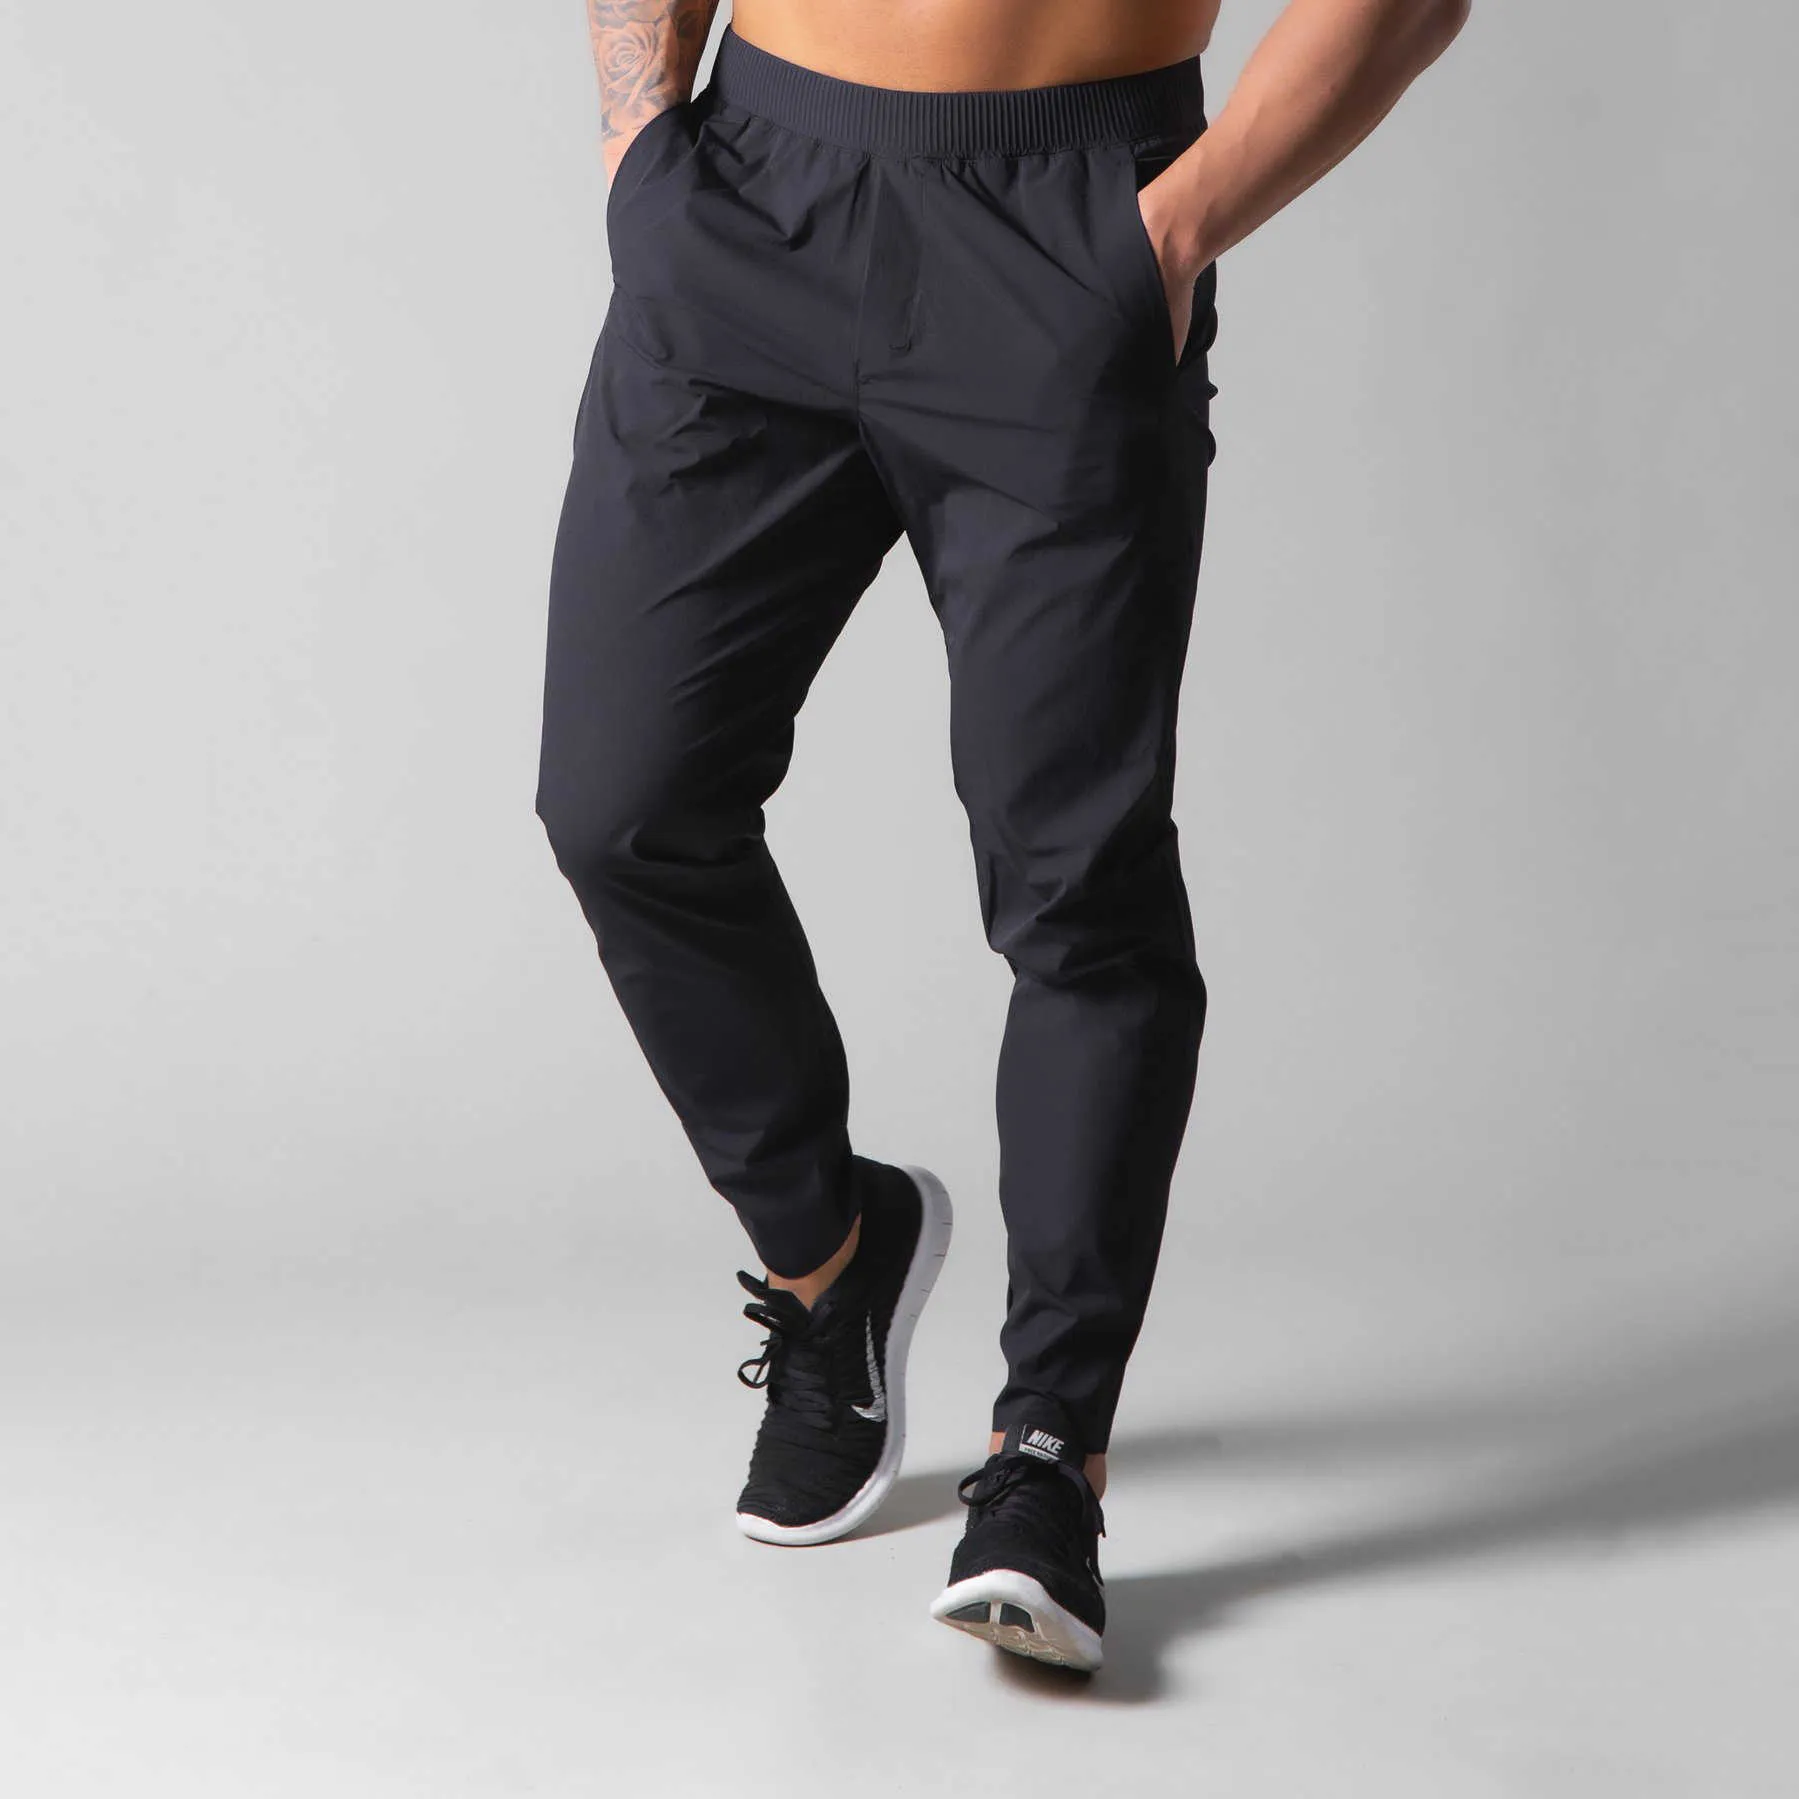 Nuevos pantalones deportivos para hombres fitness jogging deportes ocio ejercicio Leggings pantalones deportivos para hombres al aire libre X0705